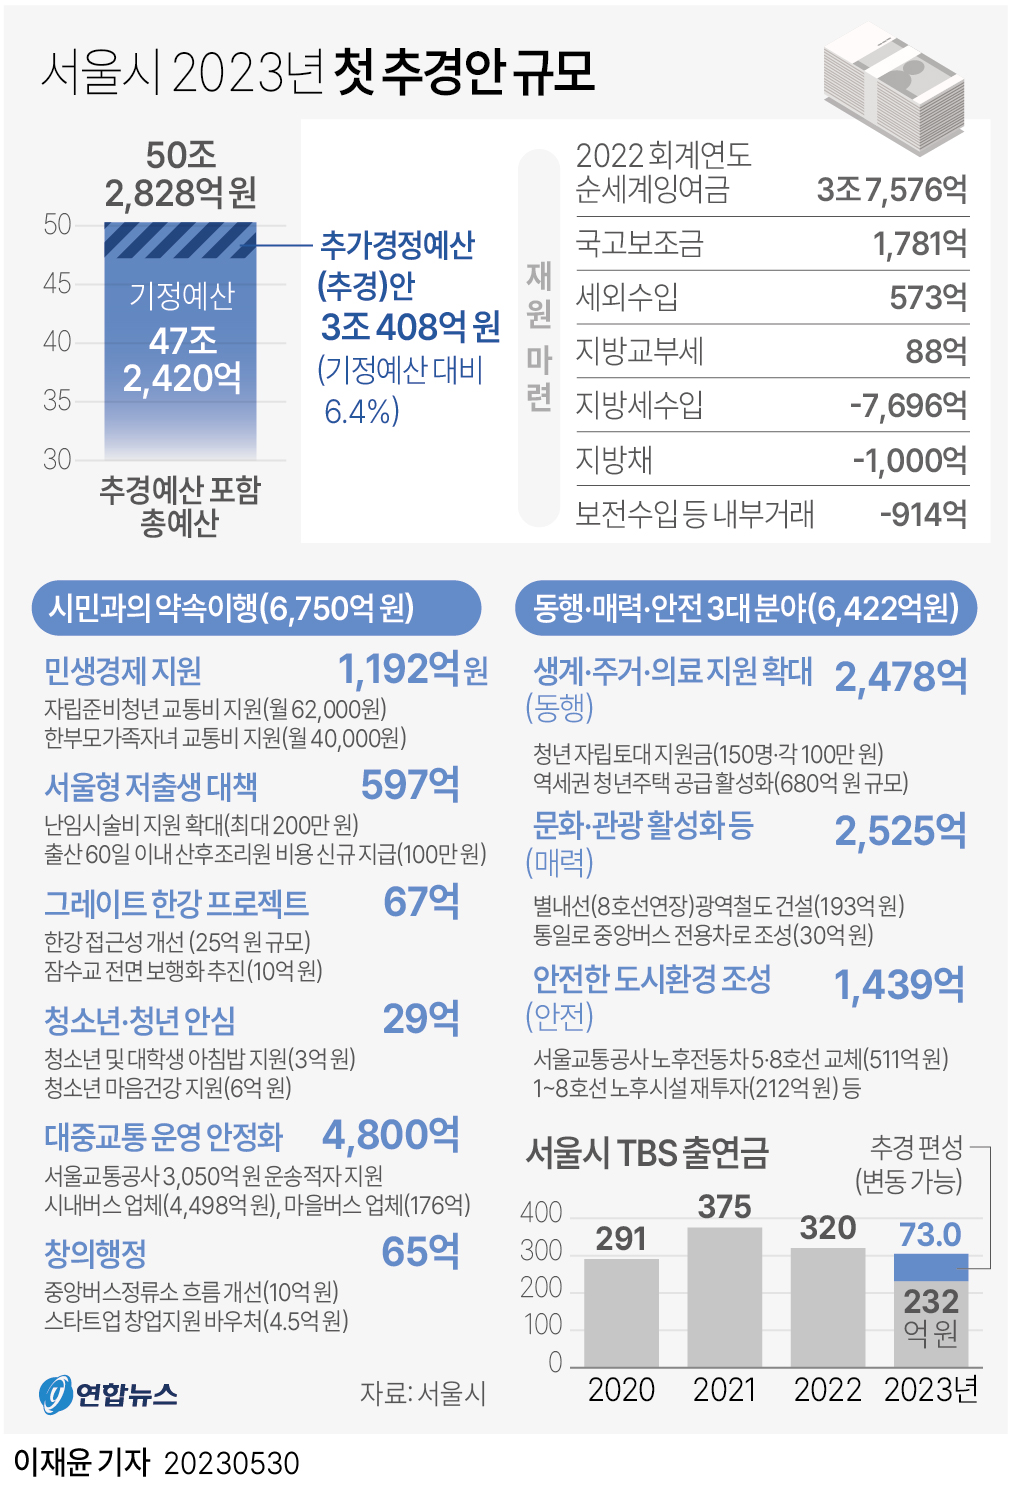 [그래픽] 서울시 2023년 첫 추경안 규모